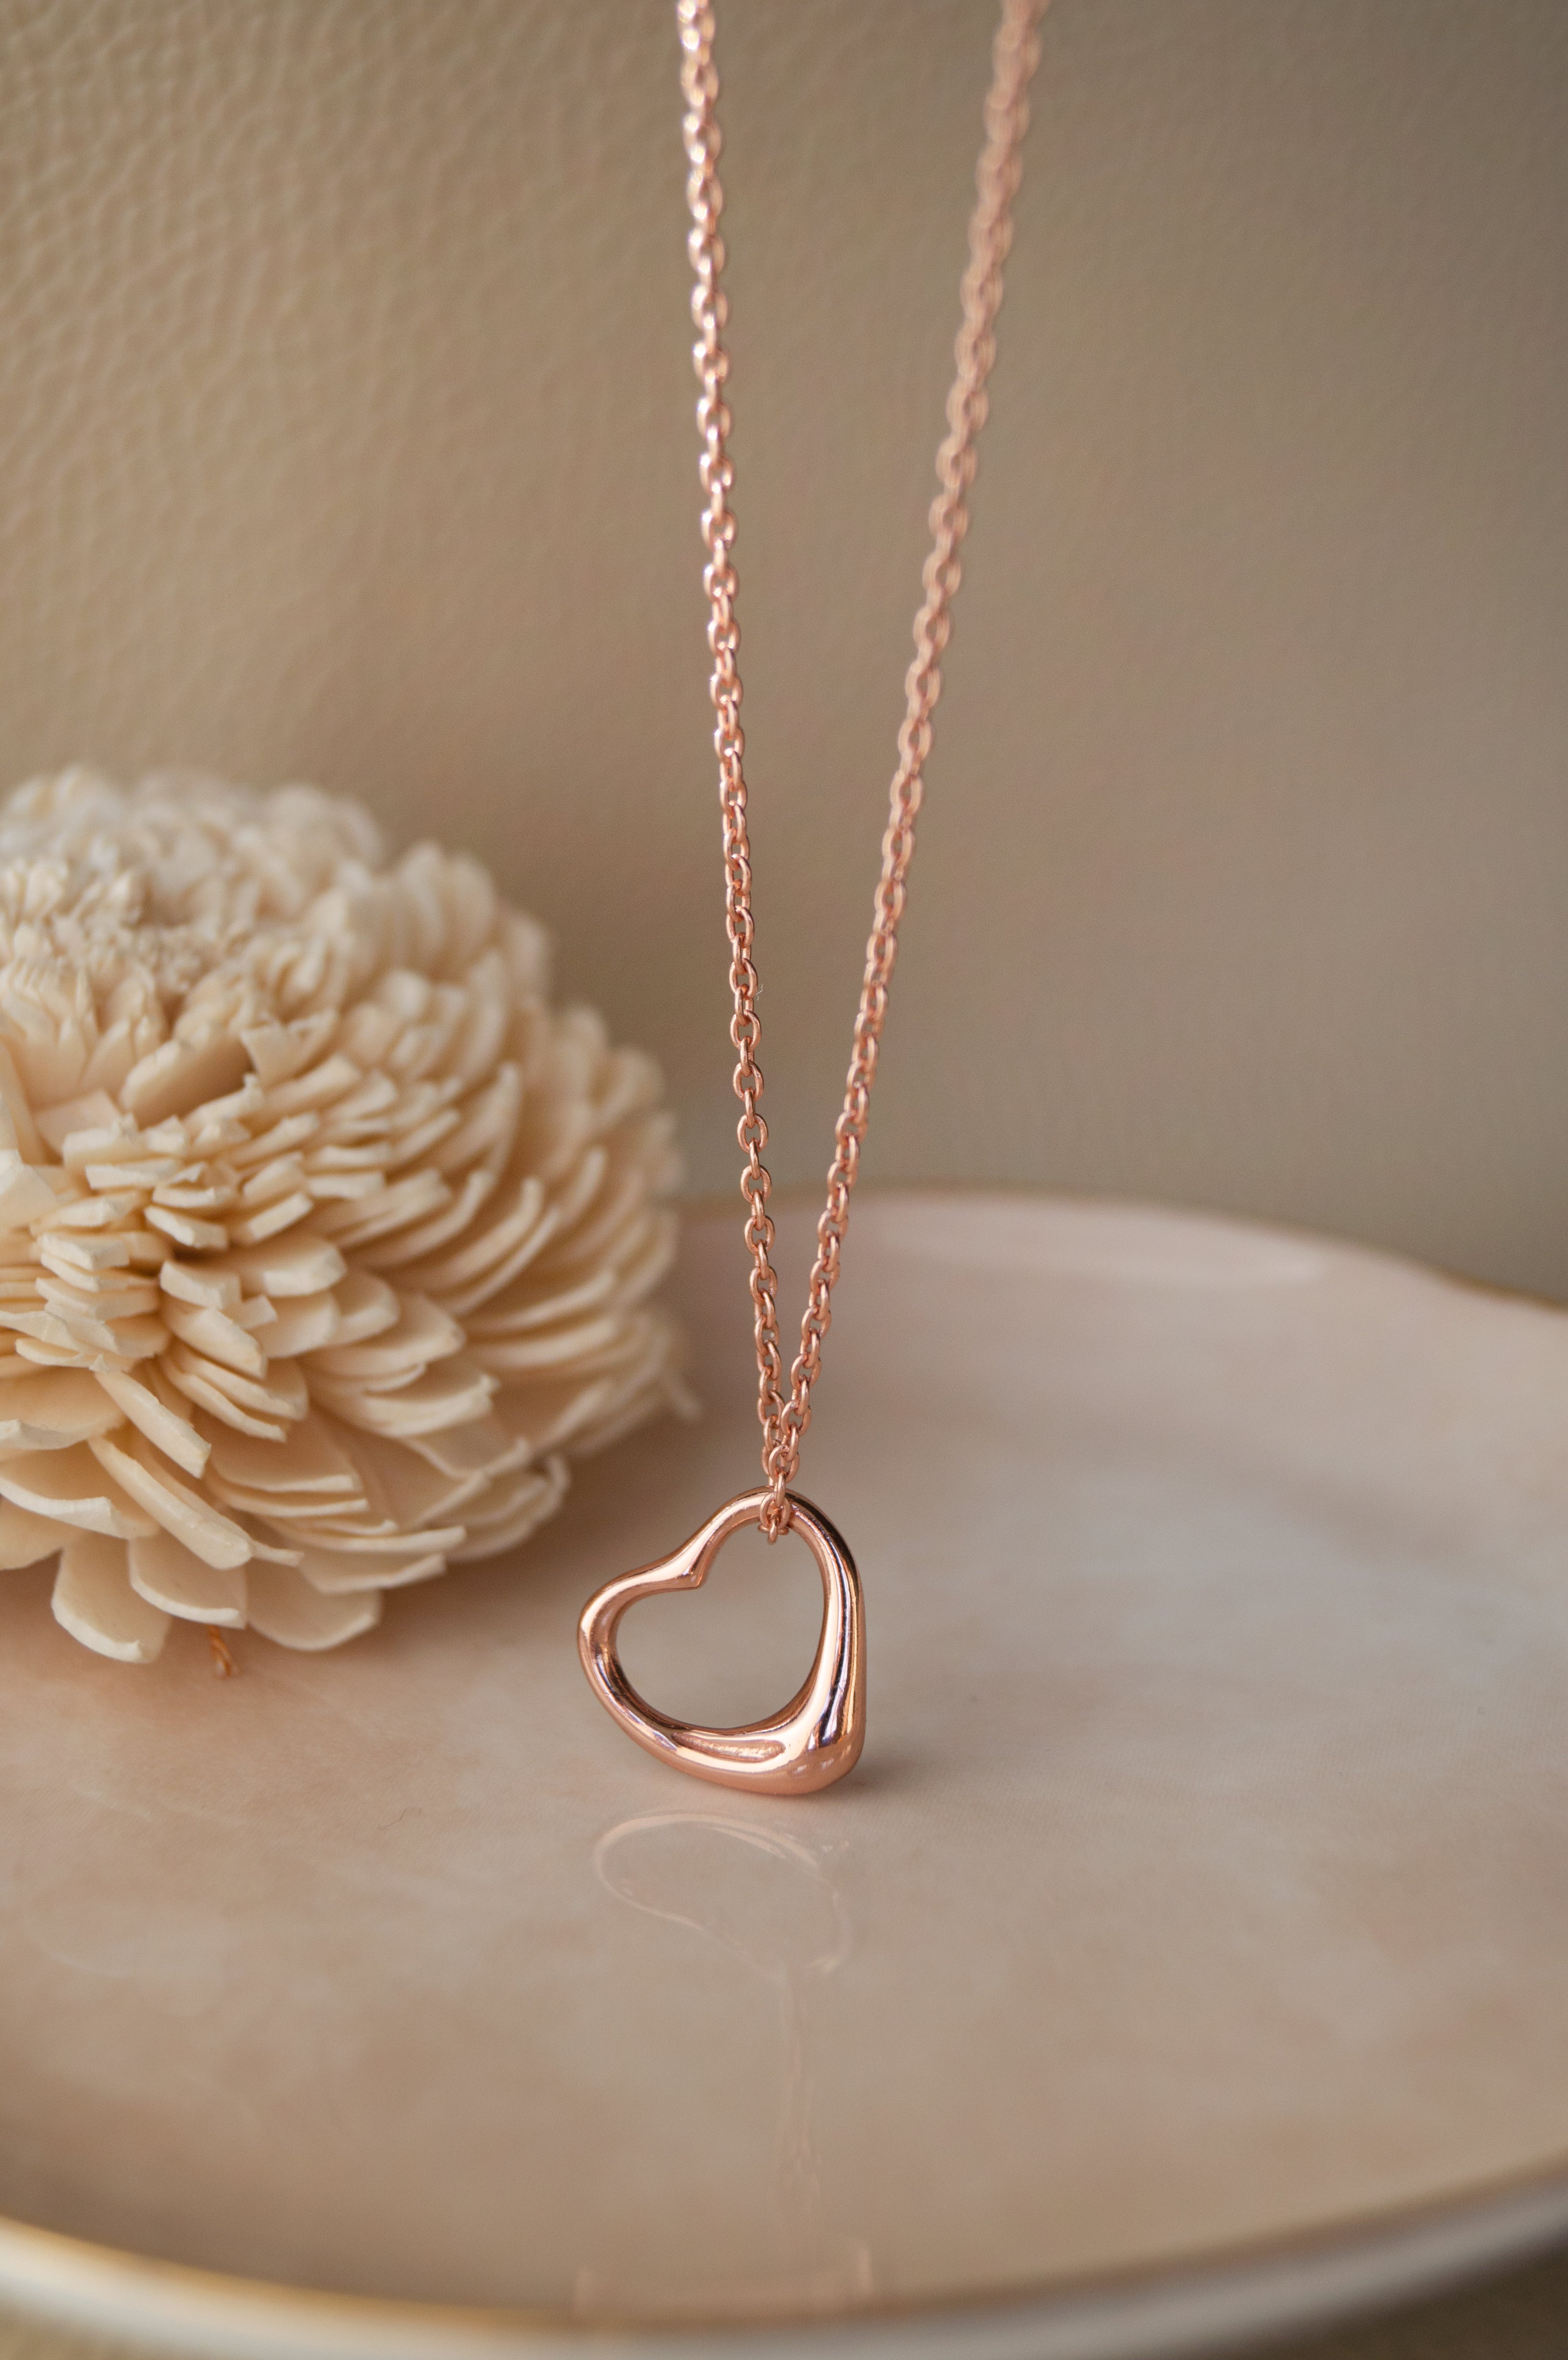 Handmade Sterling silver heart pendant. Gift for her. Valentine's gift.